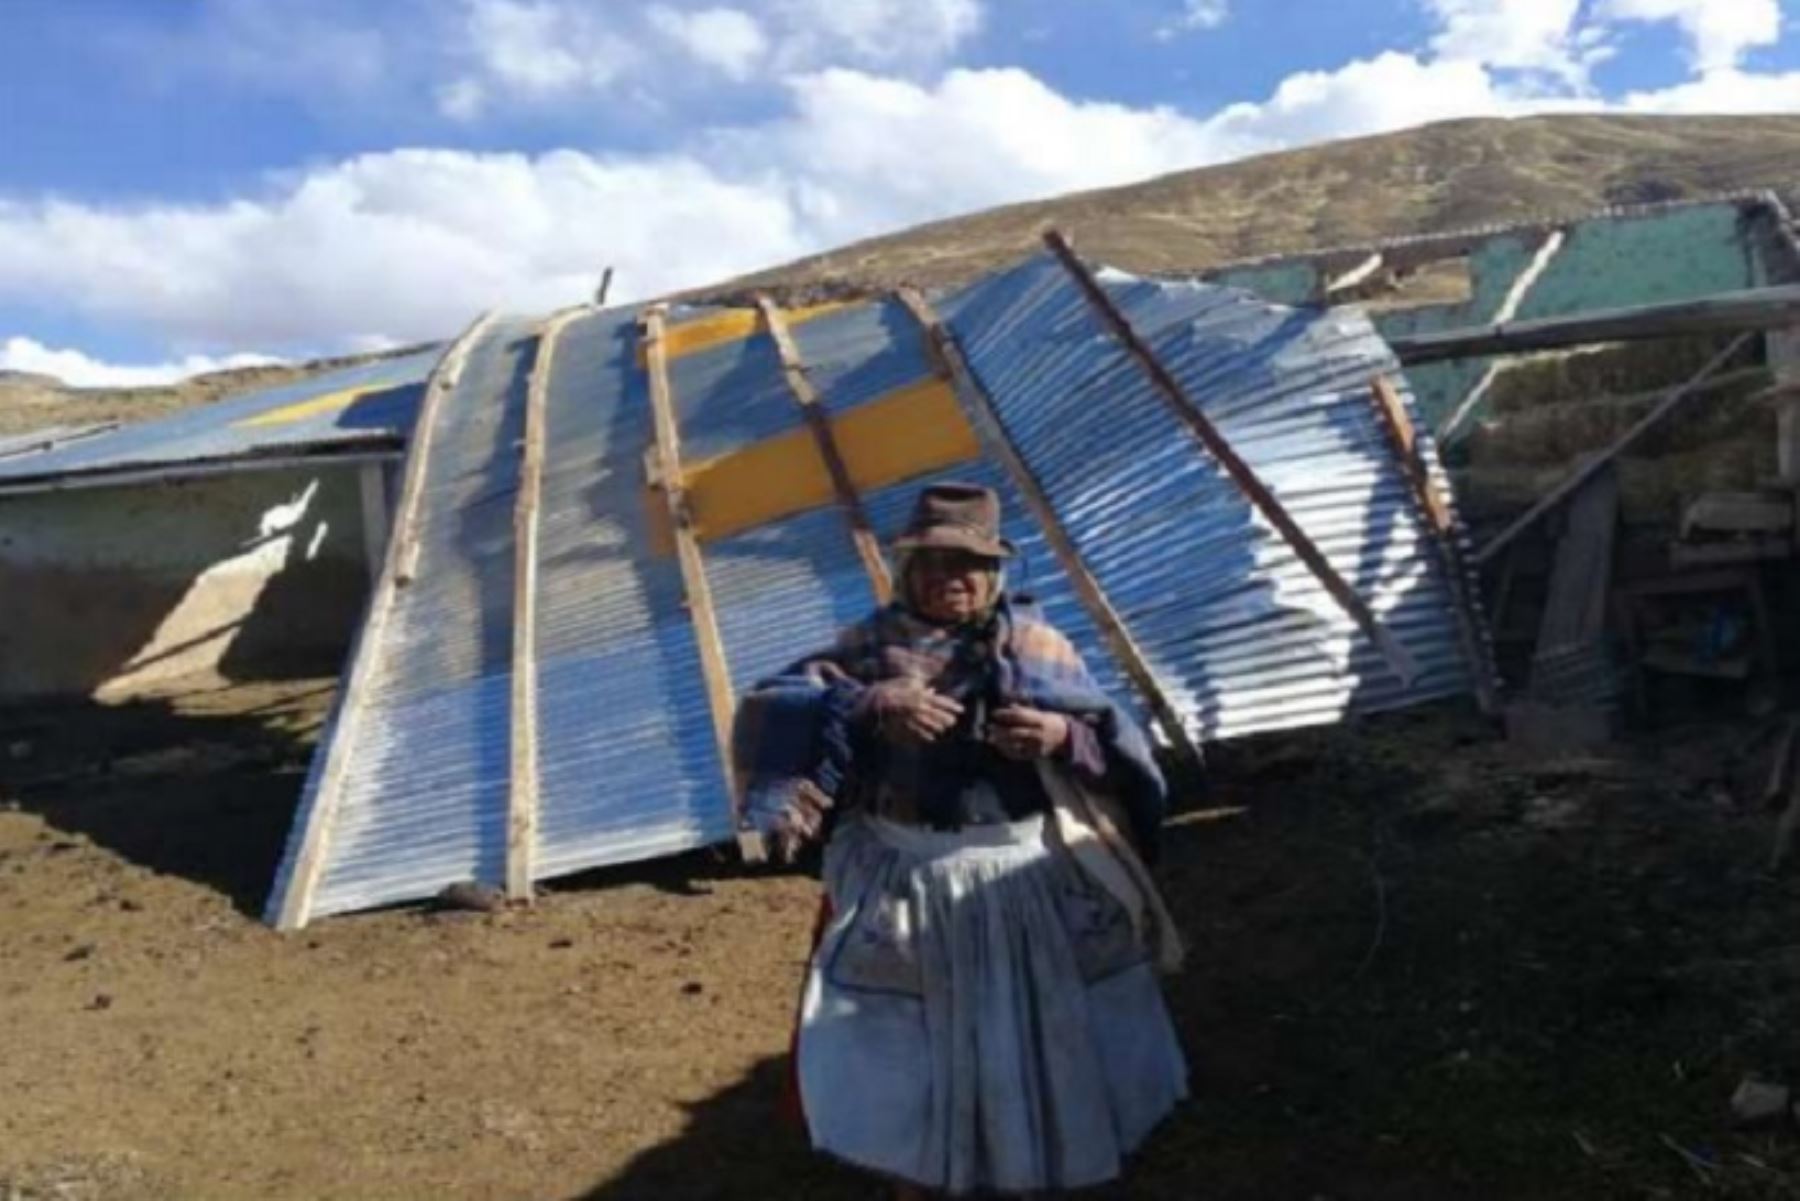 El Gobierno Regional de Puno coordina con los gobiernos locales la entrega de bienes de ayuda humanitaria para la atención de la población afectada por los vientos fuertes registrados el pasado 24 de julio en 12 provincias del departamento de Puno.